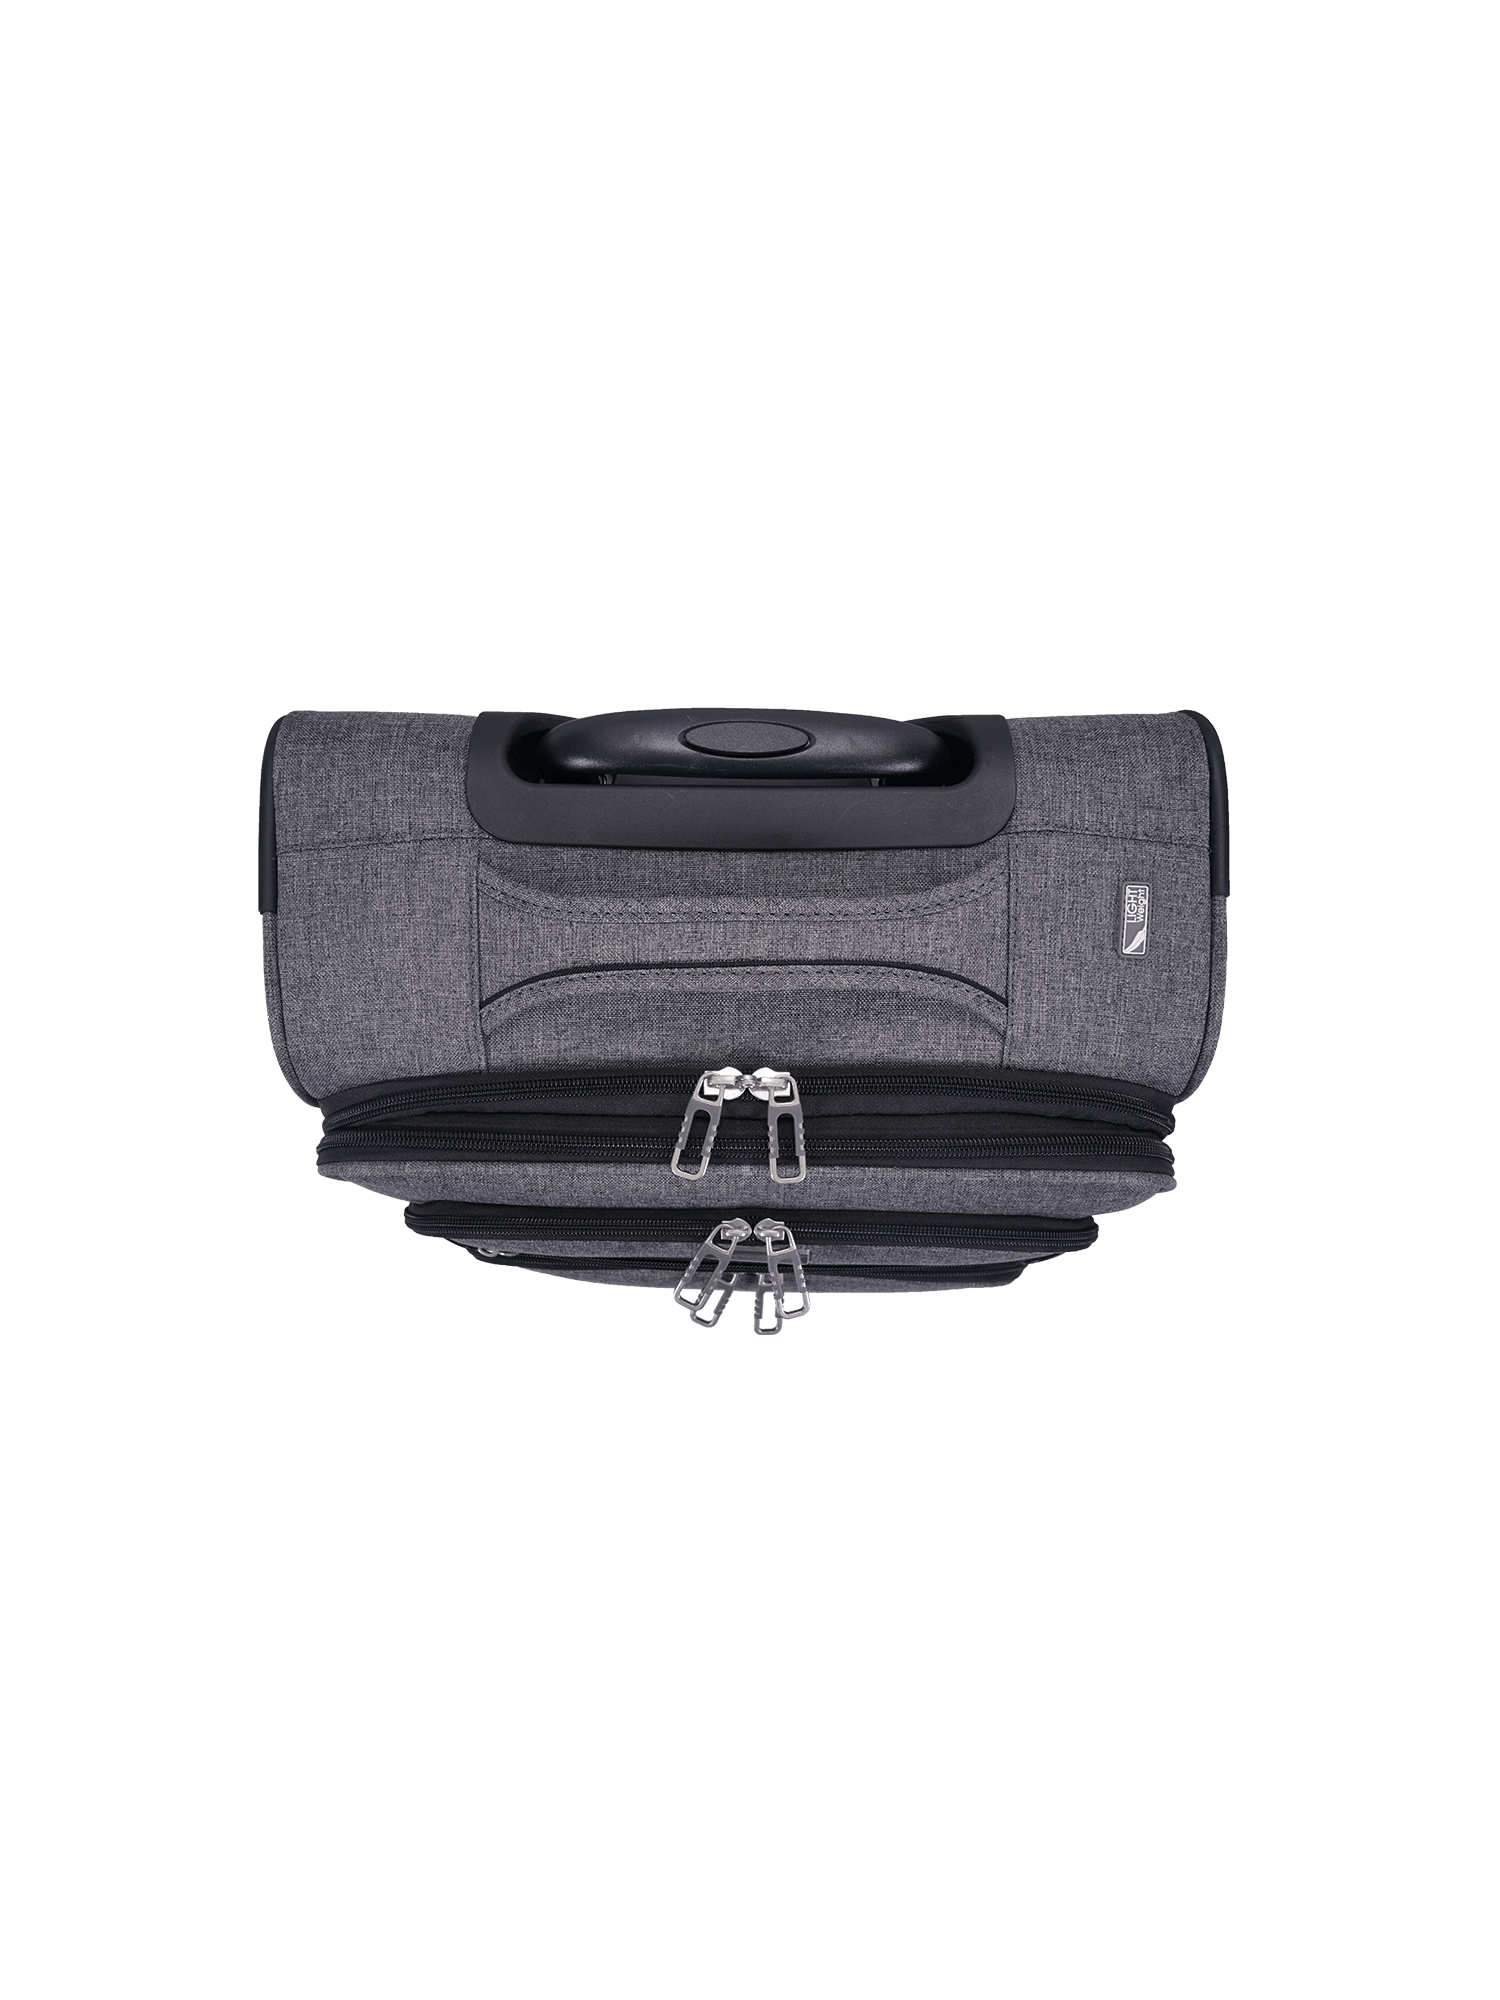 San Michelle Denim Traveller 55cm Suitcase - San Michelle Bags suitcase nz